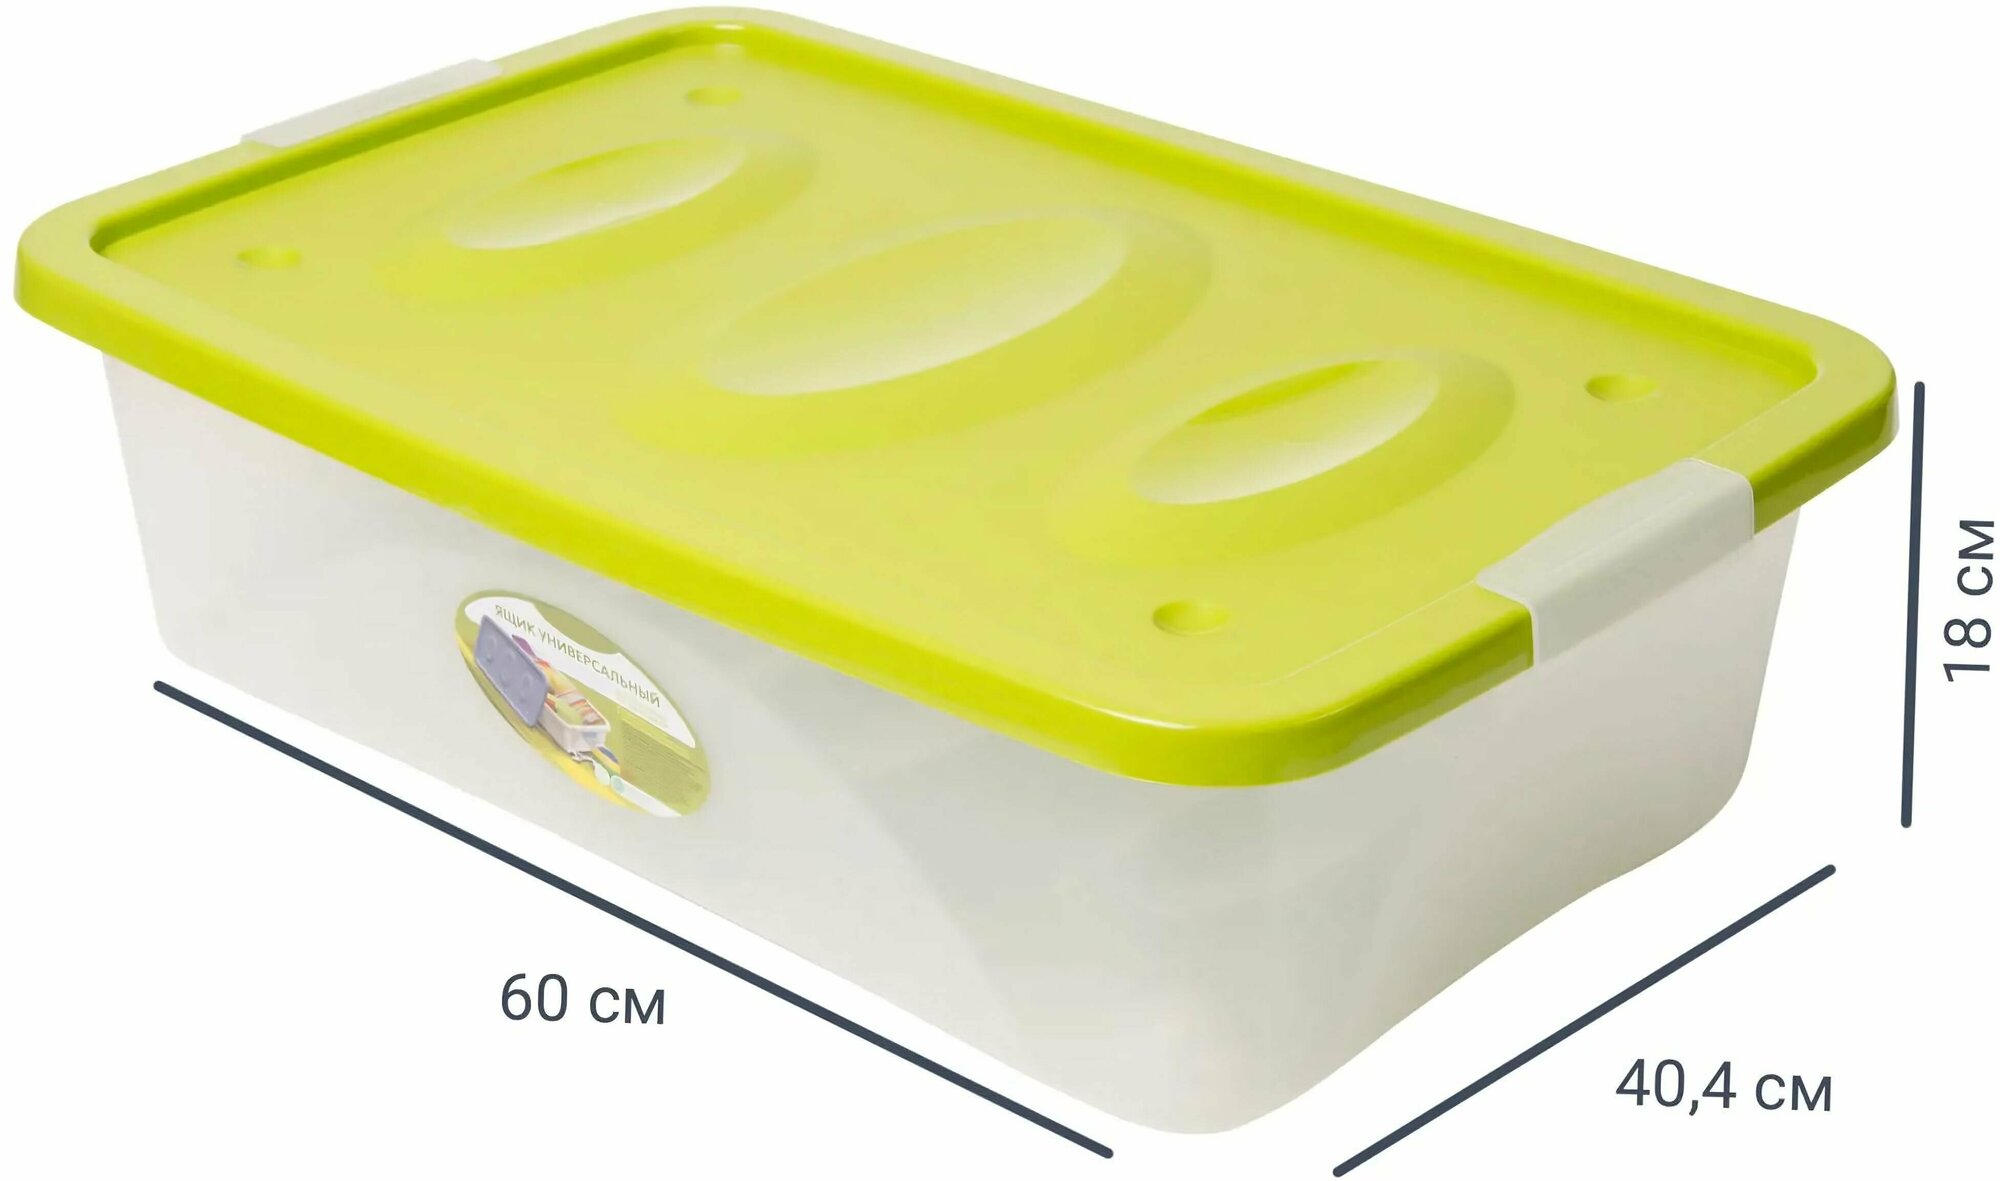 Ящик, 60x40.4x18 см: высококачественный пластик; с крышкой; на колесах; станет удобным хранилищем для любых вещей; не подвержен деформации